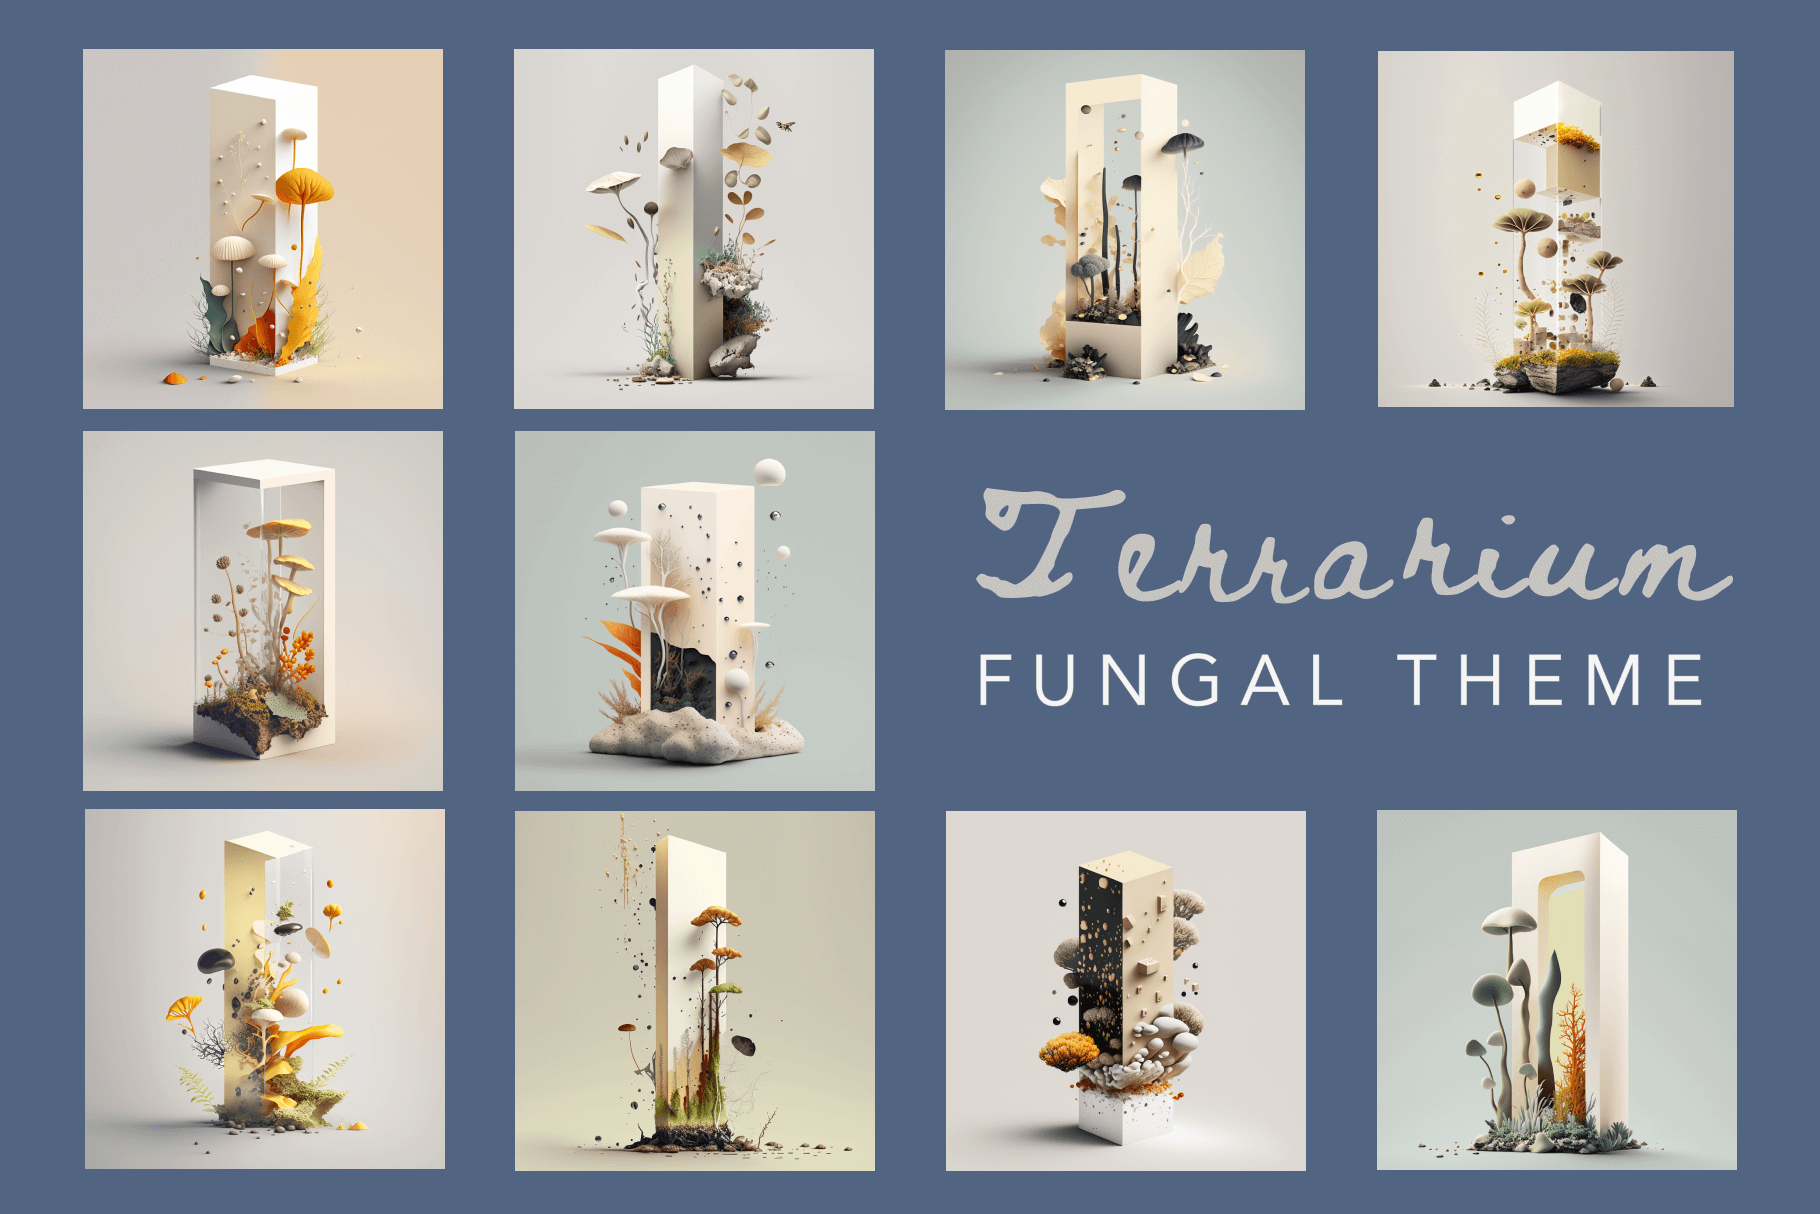 Illustrations of fungal terrariums